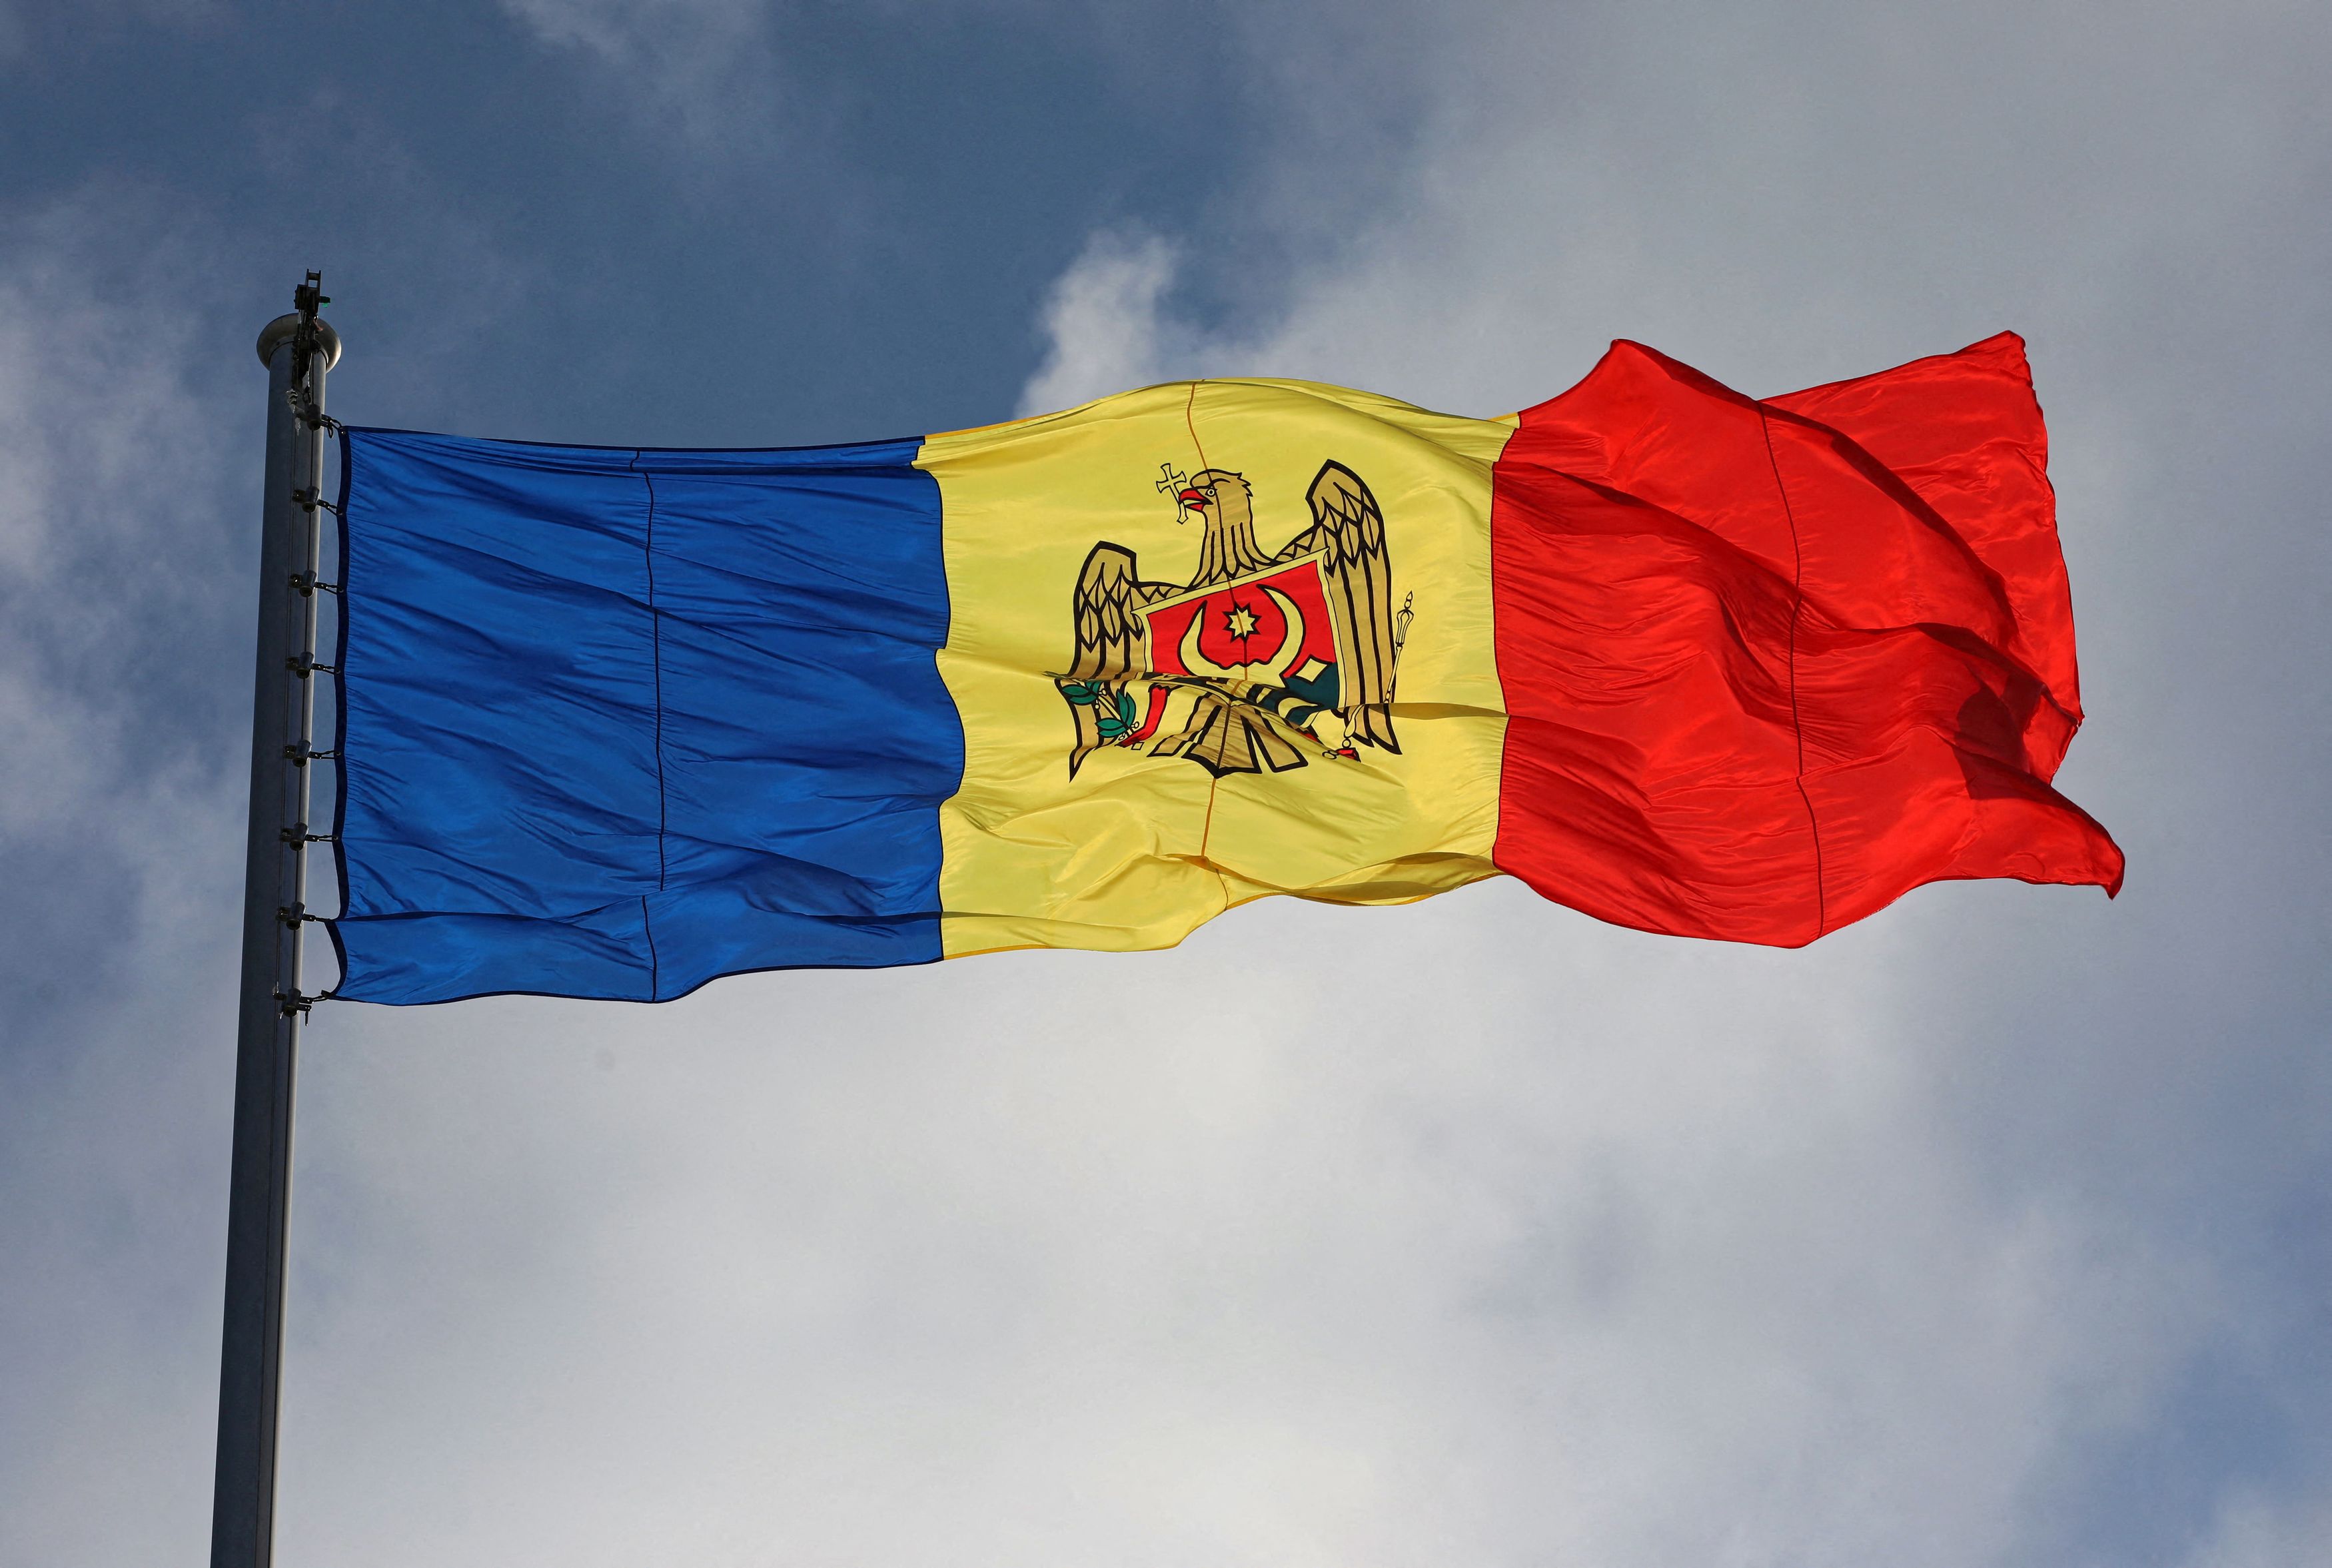 Μολδαβία: Εκλογές και δημοψήφισμα για ένταξη στην ΕΕ στις 20 Οκτωβρίου